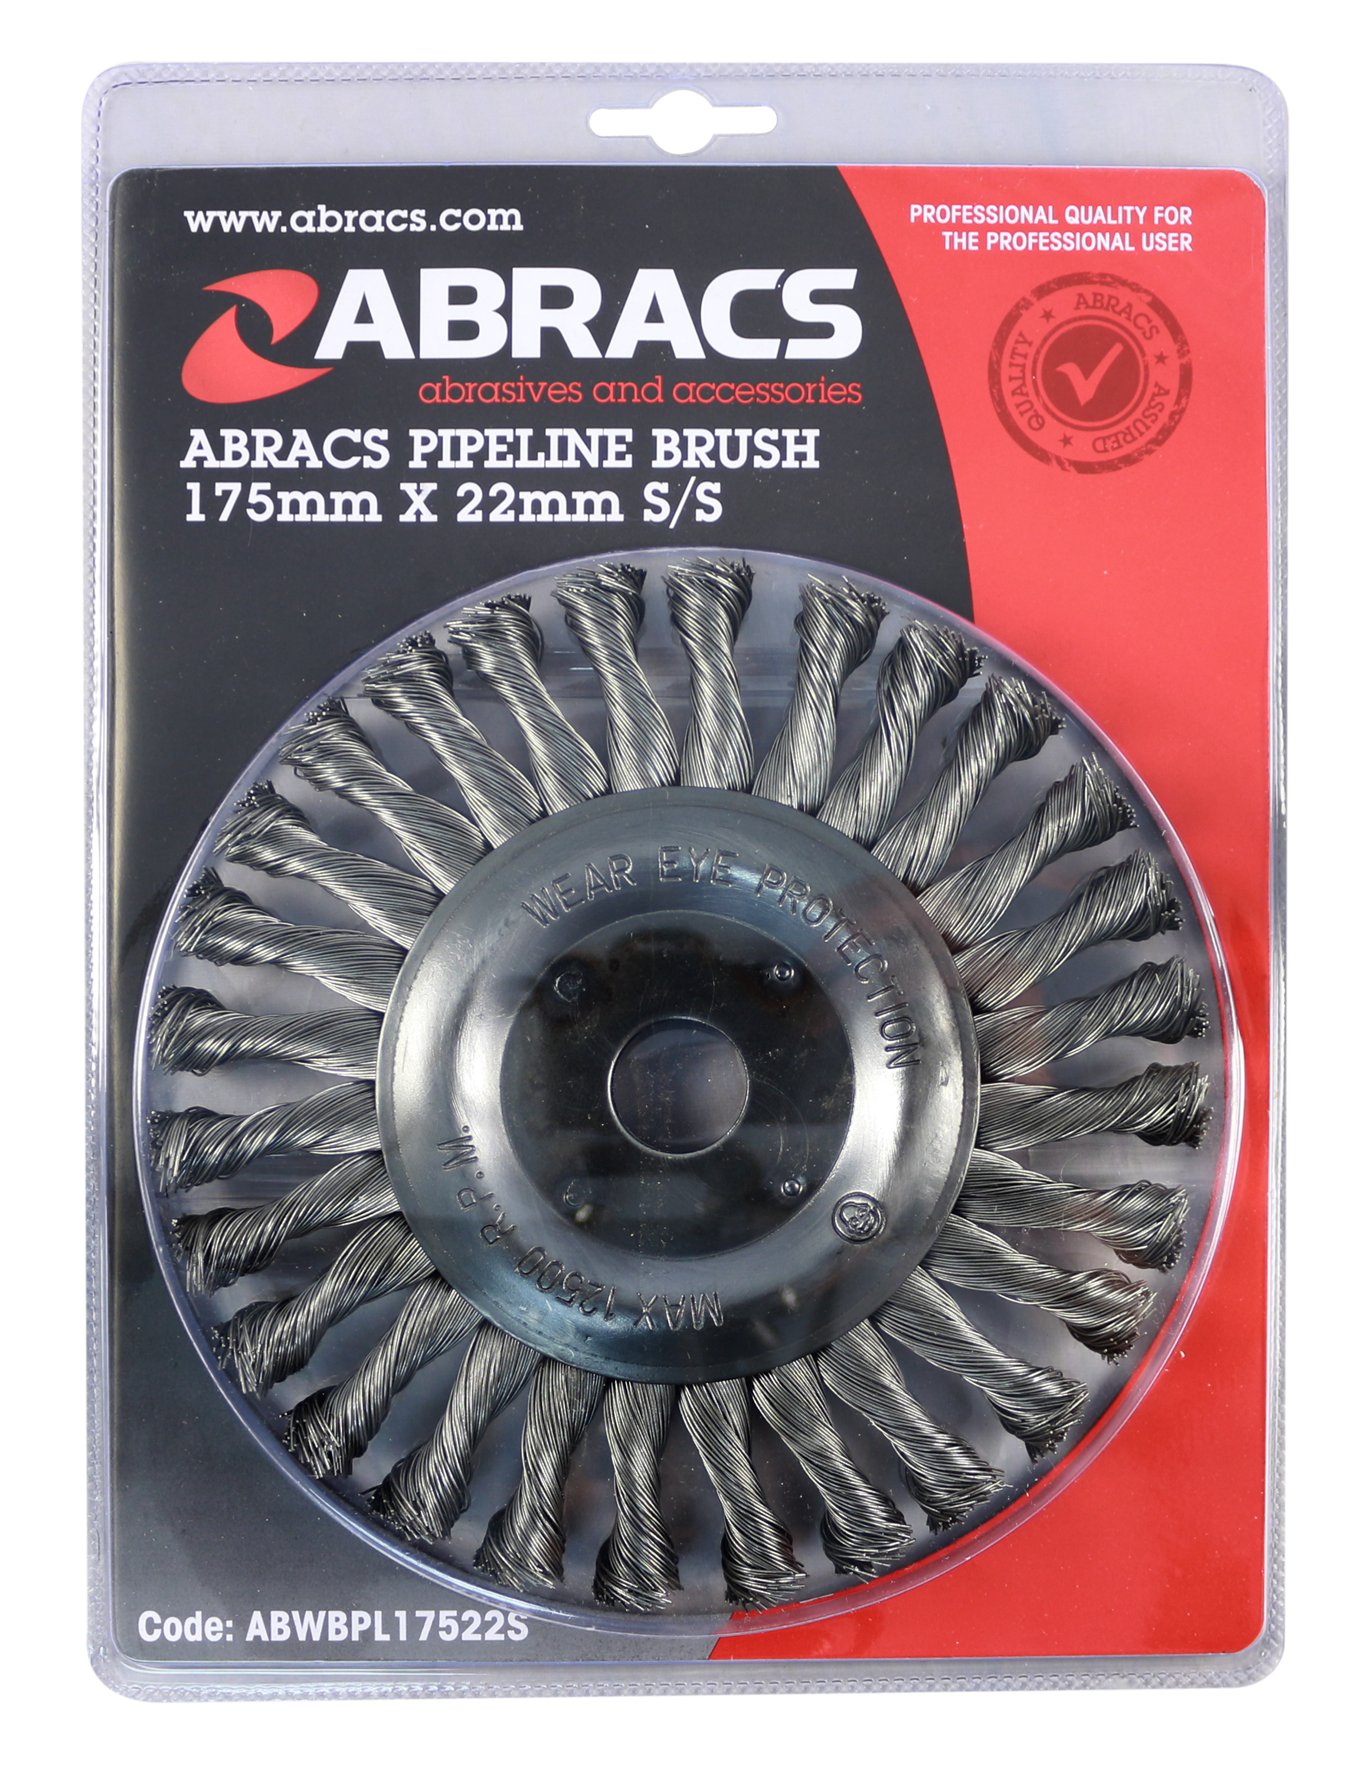 Abracs  PIPELINE BRUSH 175mm x 22mm S/S